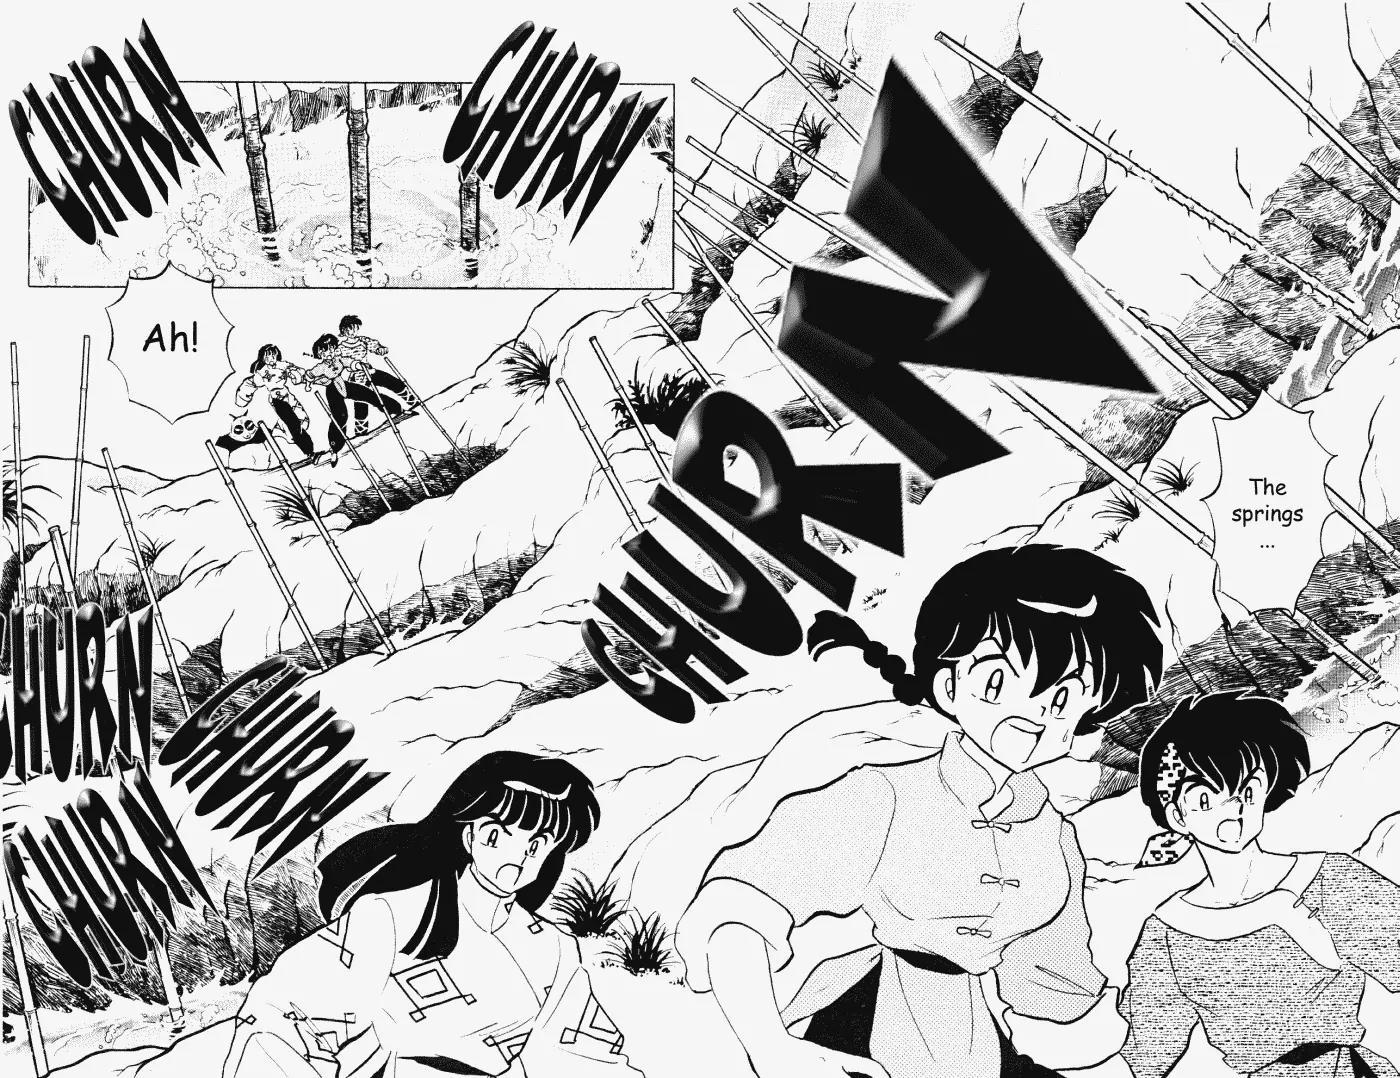 Ranma 1/2 Chapter 397: Junsenkyo's Disaster  